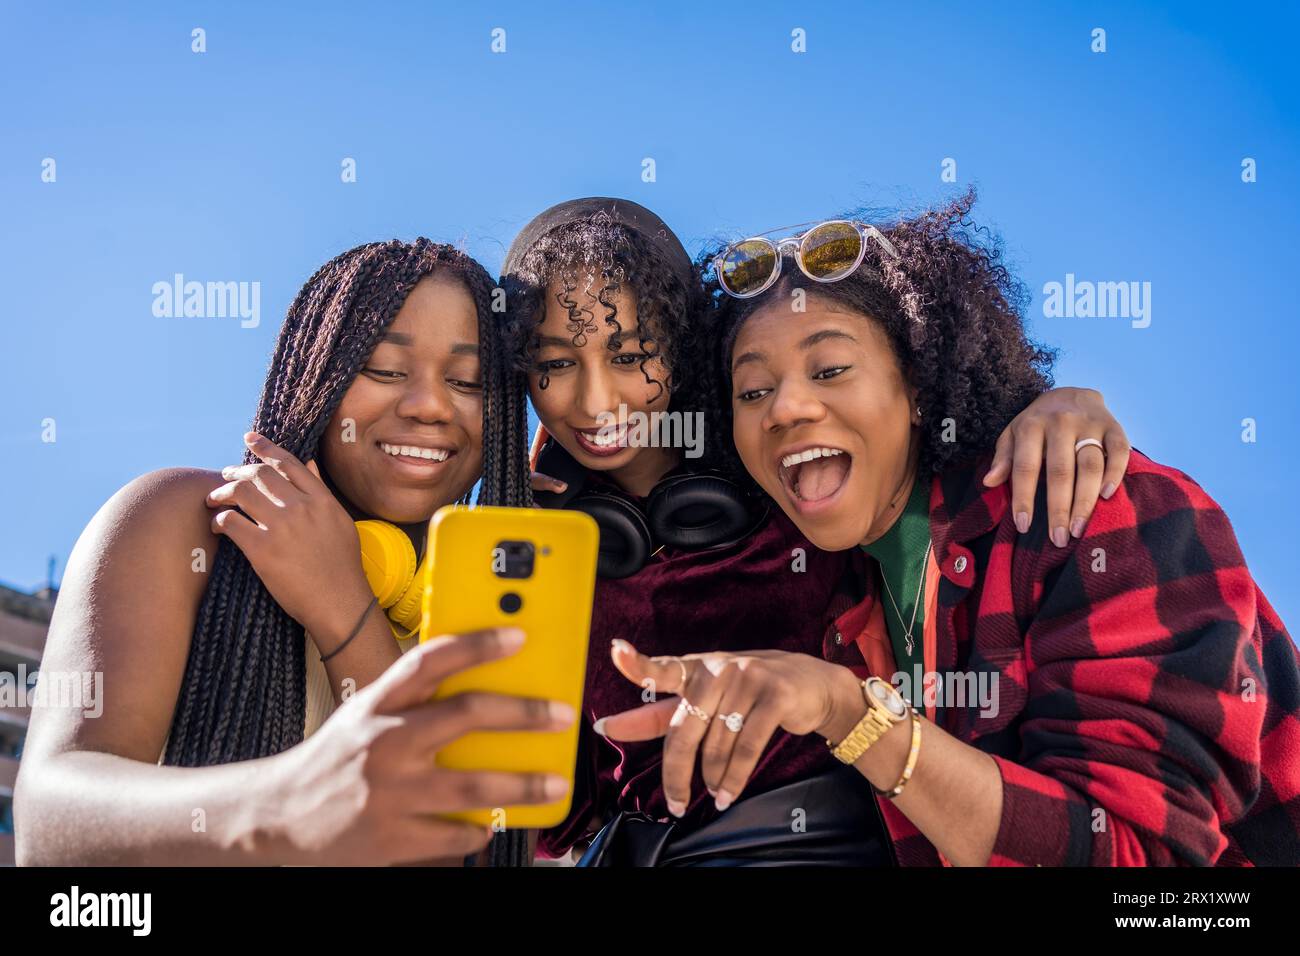 Vue en angle bas de trois amis multi-ethniques souriant tout en partageant un mobile en plein air Banque D'Images